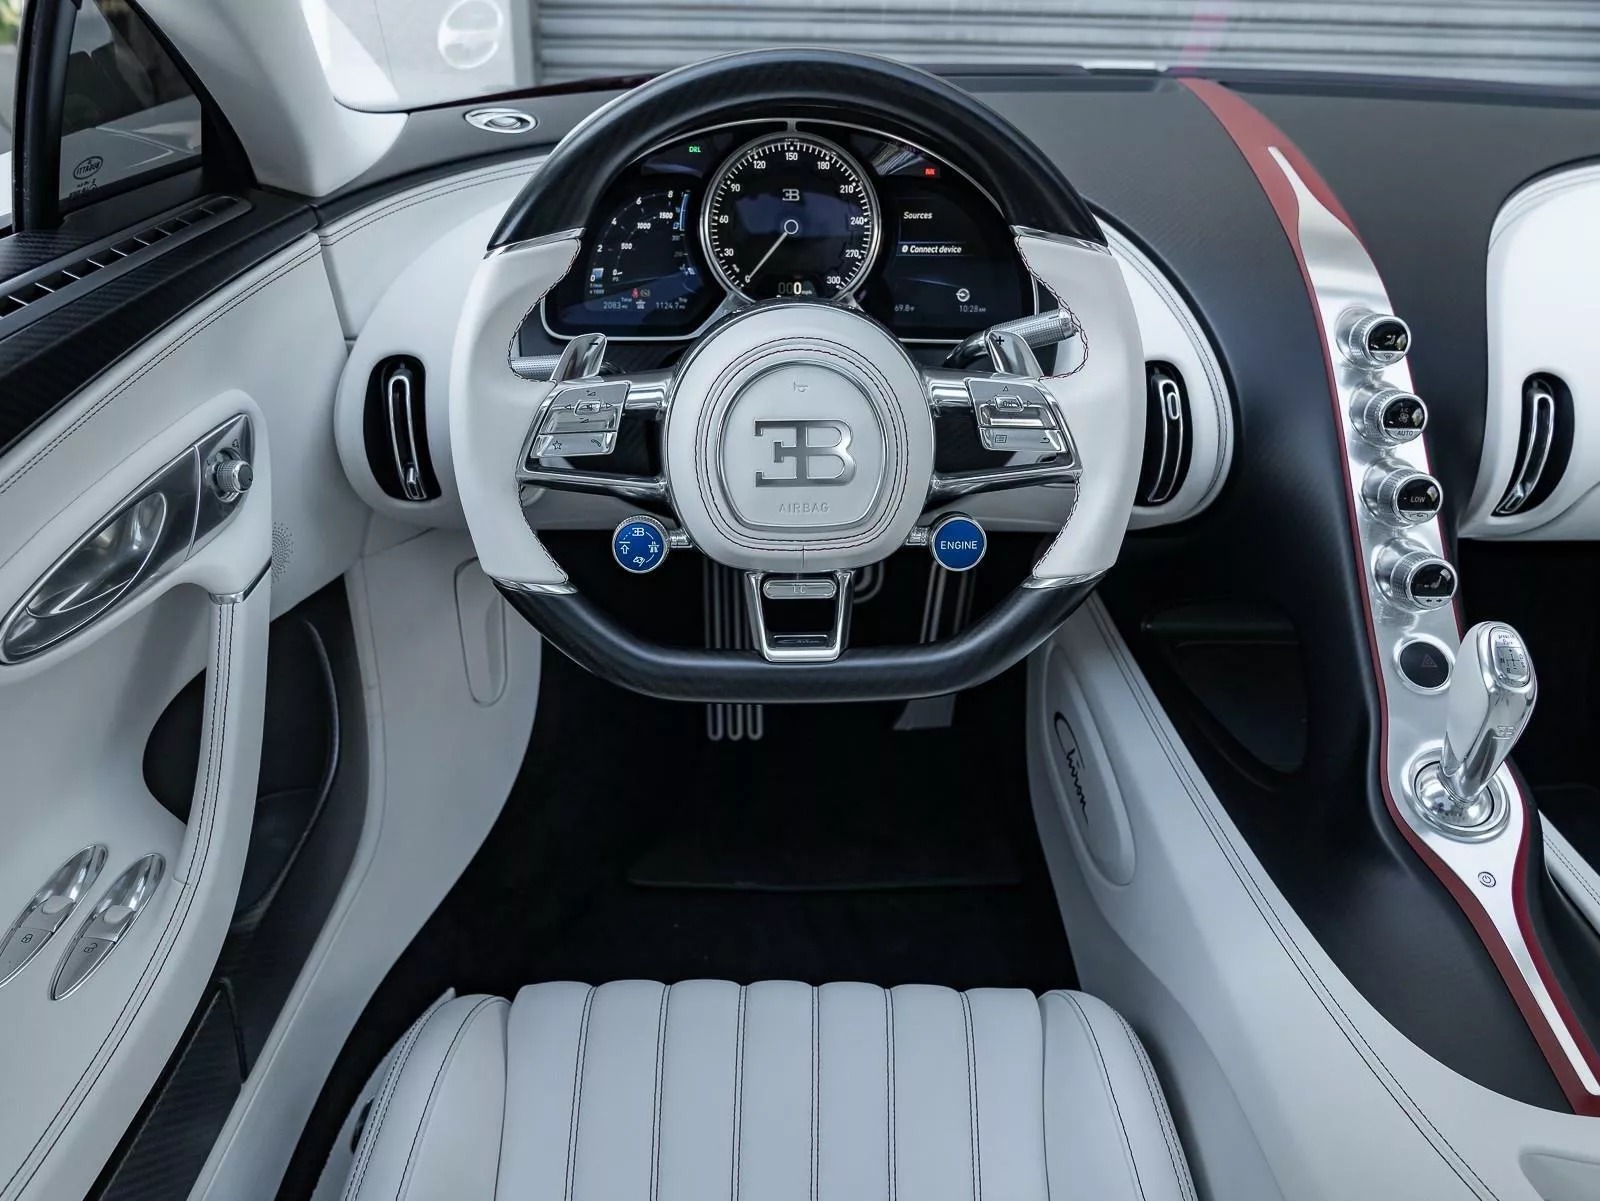 Rao bán Bugatti Chiron giá quy đổi hơn 95 tỷ đồng, chủ xe hứa tặng kèm Rolls-Royce Wraith hợp tông màu- Ảnh 3.